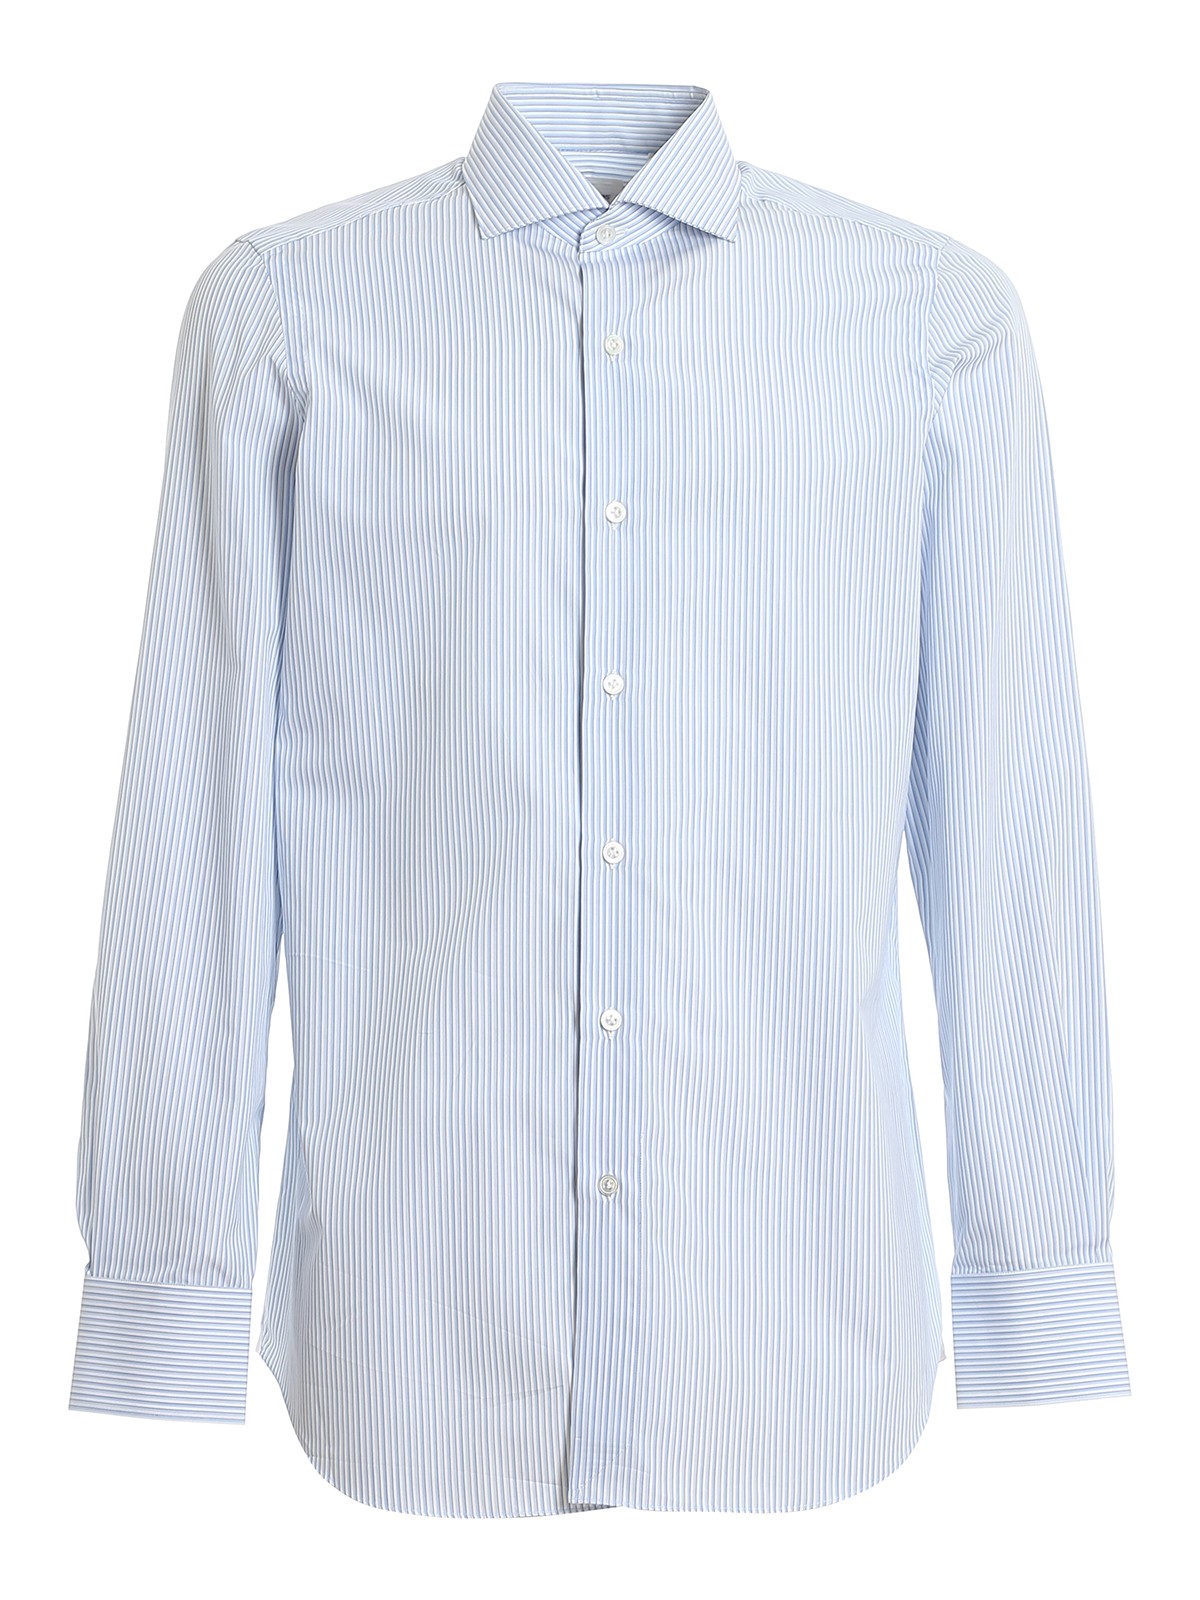 Shirts Finamore 1925 - Striped Giza 45 cotton shirt - C0239MILANO21